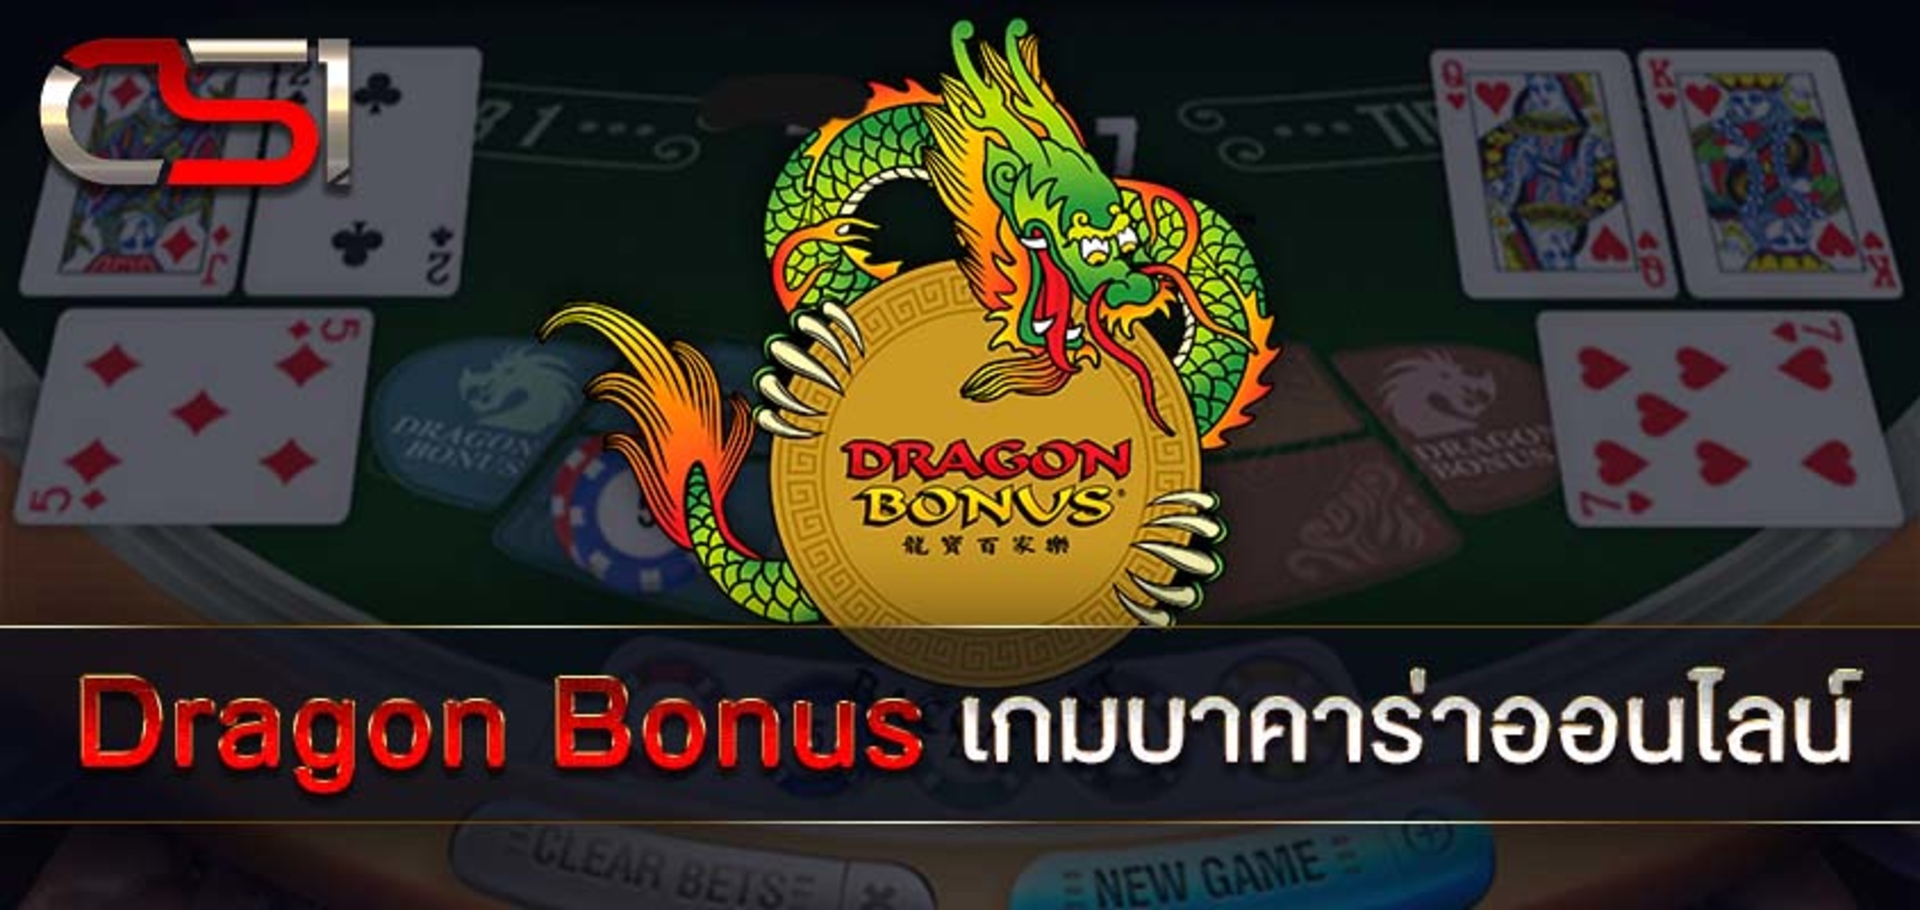 Dragon Bonus เกมบาคาร่าออนไลน์ อีกแบบที่ได้รับความนิยมสูงจากผู้เล่น